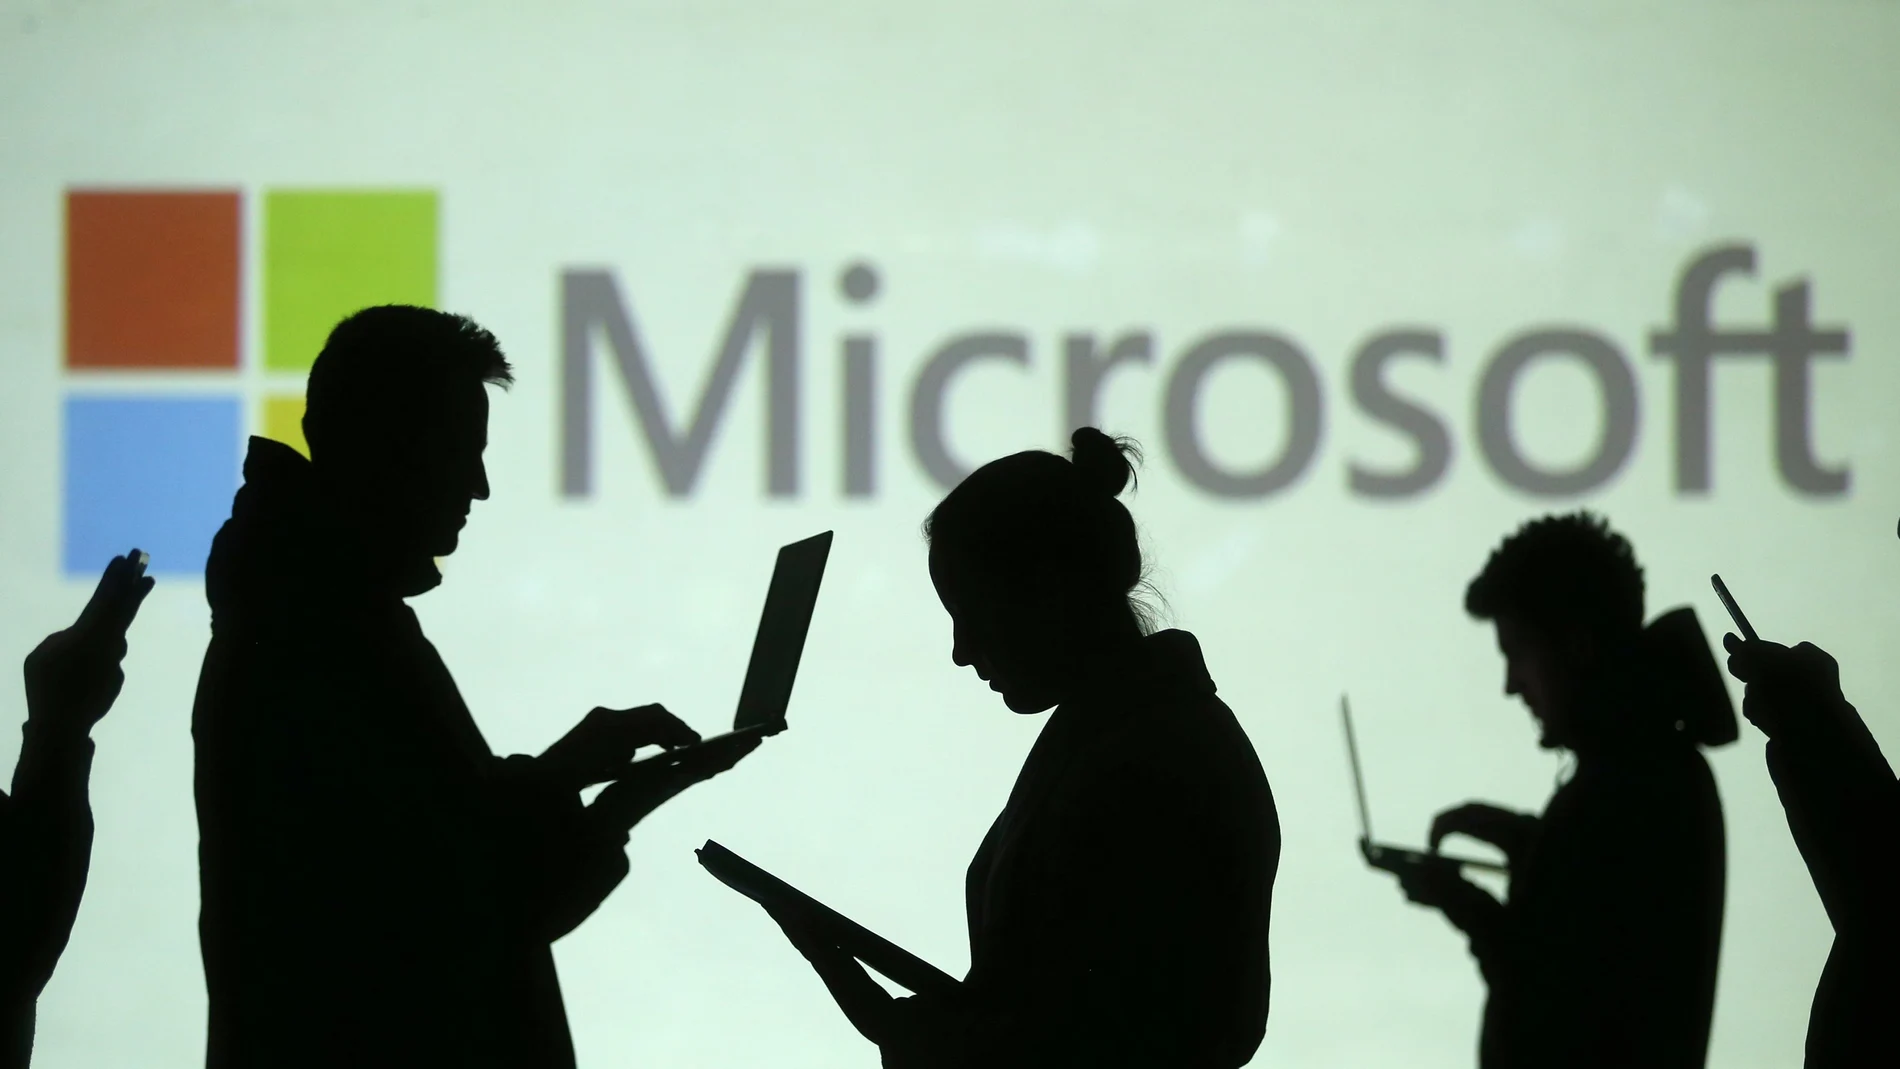 Microsoft Office desaparecerá, ¿qué pasará con los archivos? - El